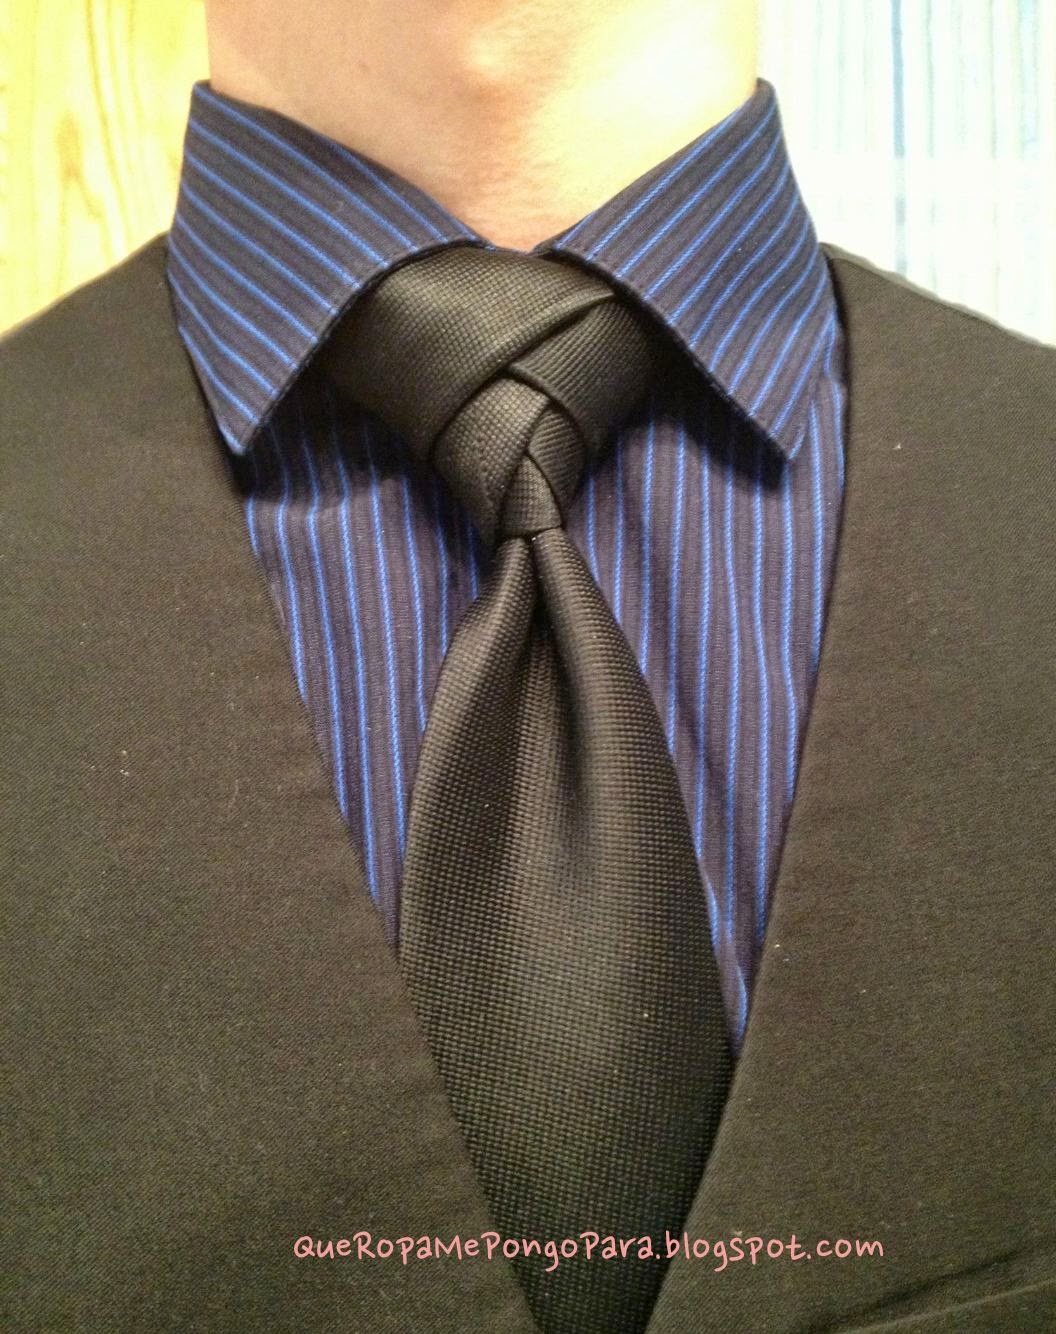 COMO HACER UN NUDO DE CORBATA ELDREDGE - Eldredge tie knot